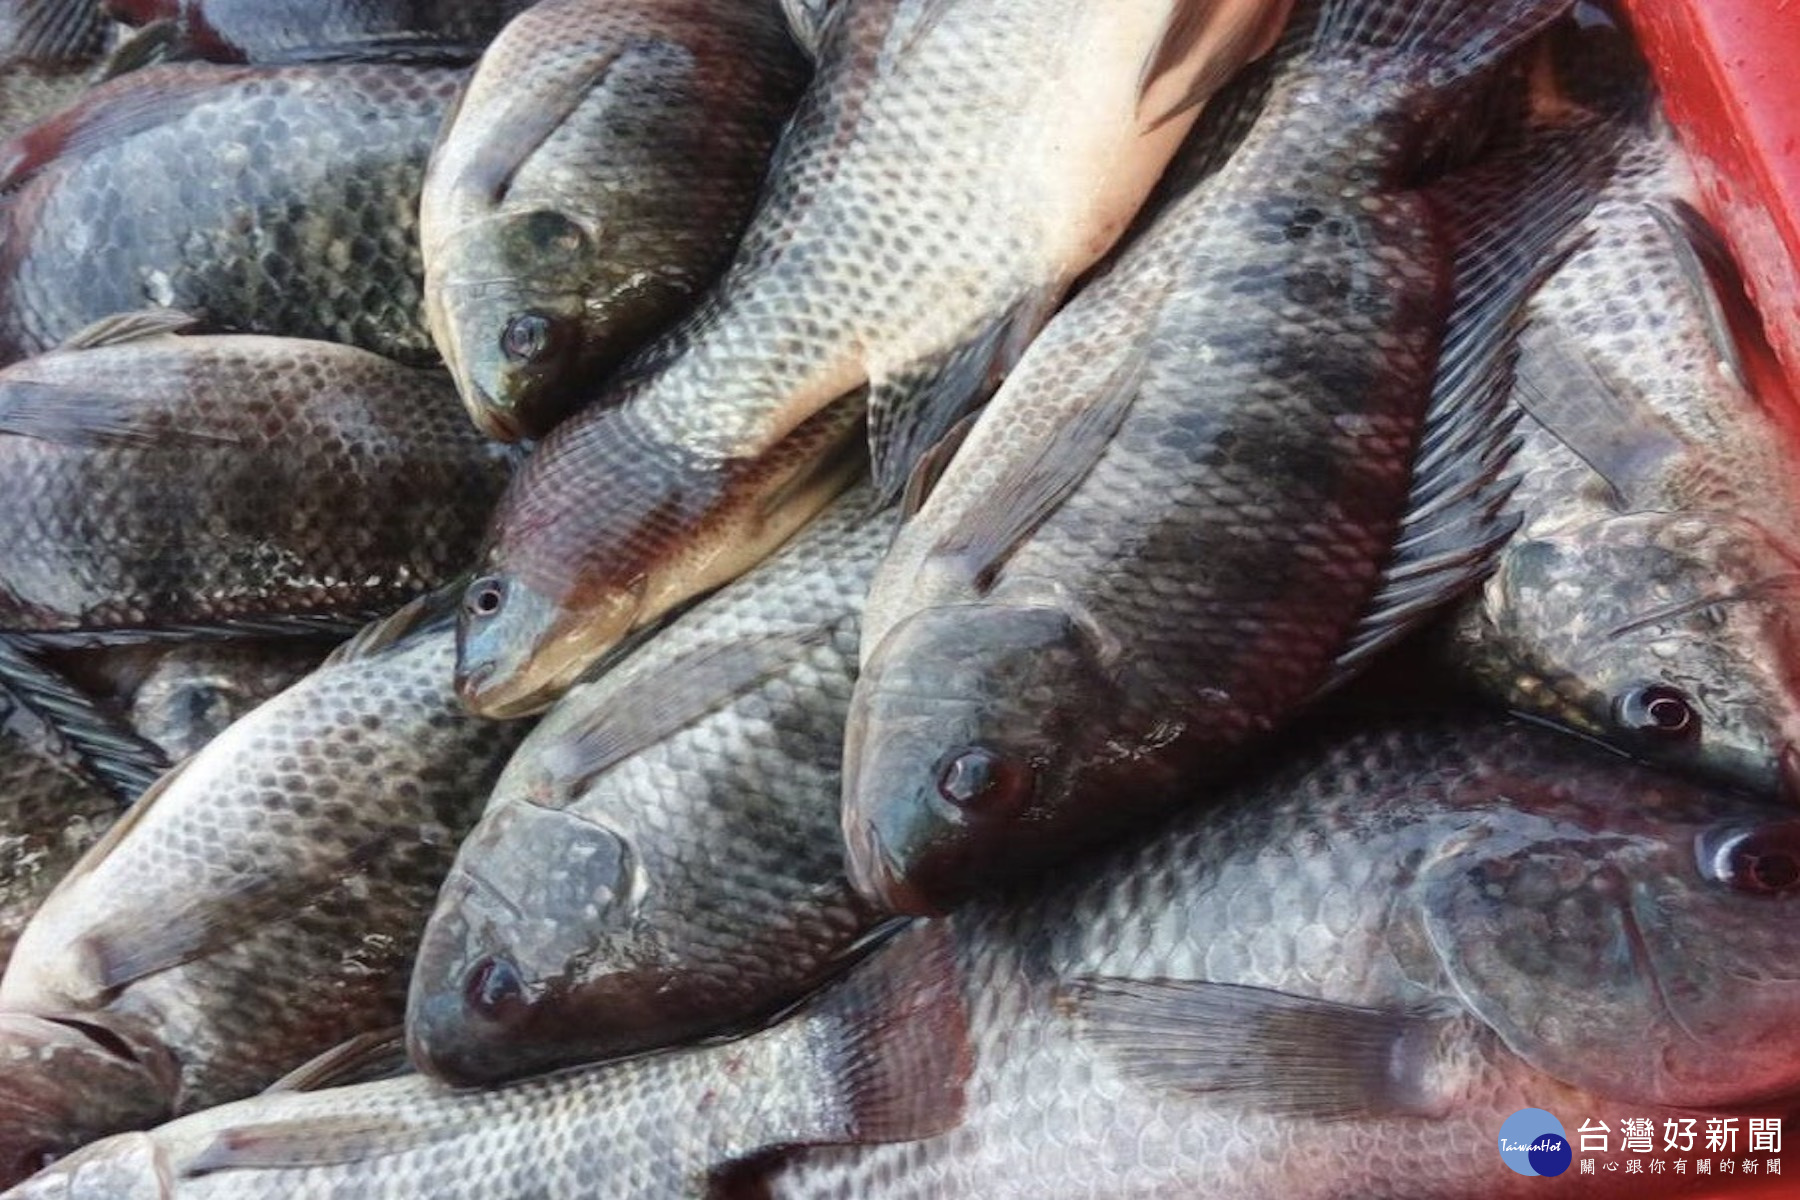 臺南沿海養殖的正鹹水吳郭魚今天零售價仍在40~60之間，銷售情形正常。(圖/記者黃芳祿攝) 